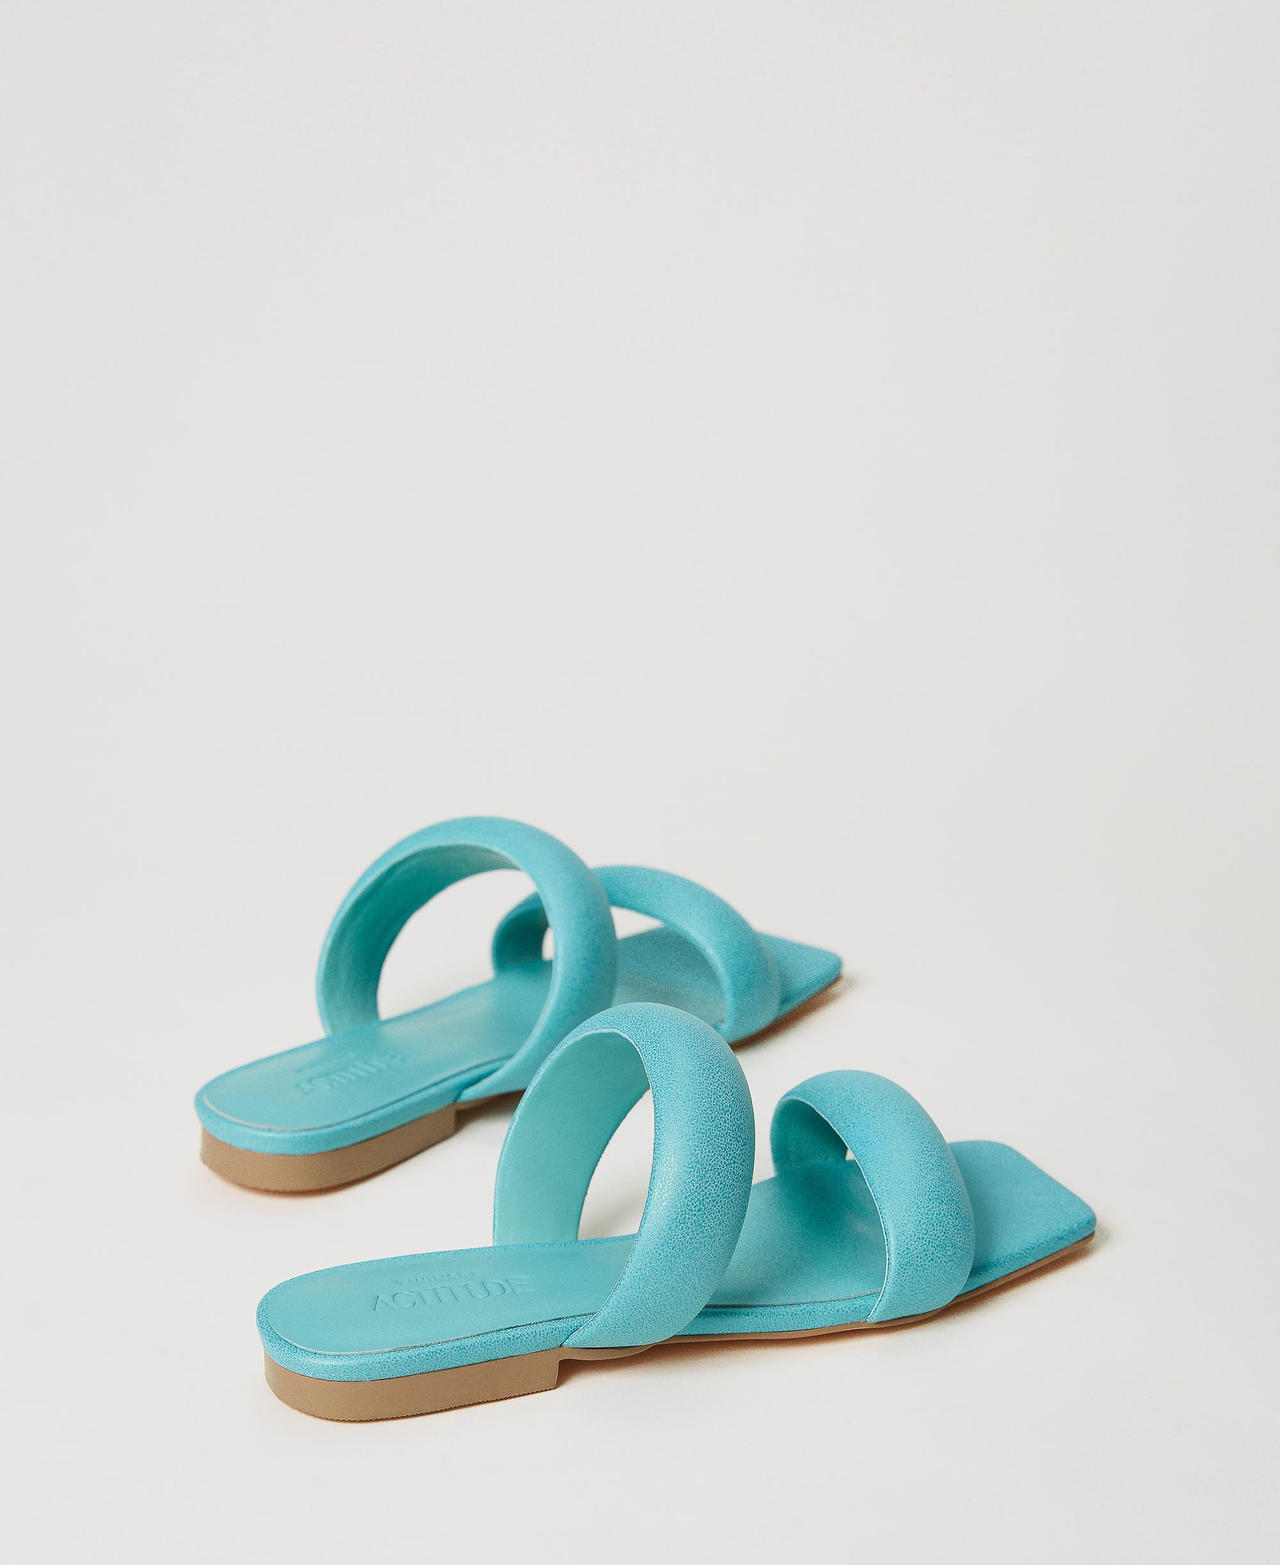 Sandales slides avec bandes matelassées Bleu « Pacific Opal » Femme 231ACT012-03